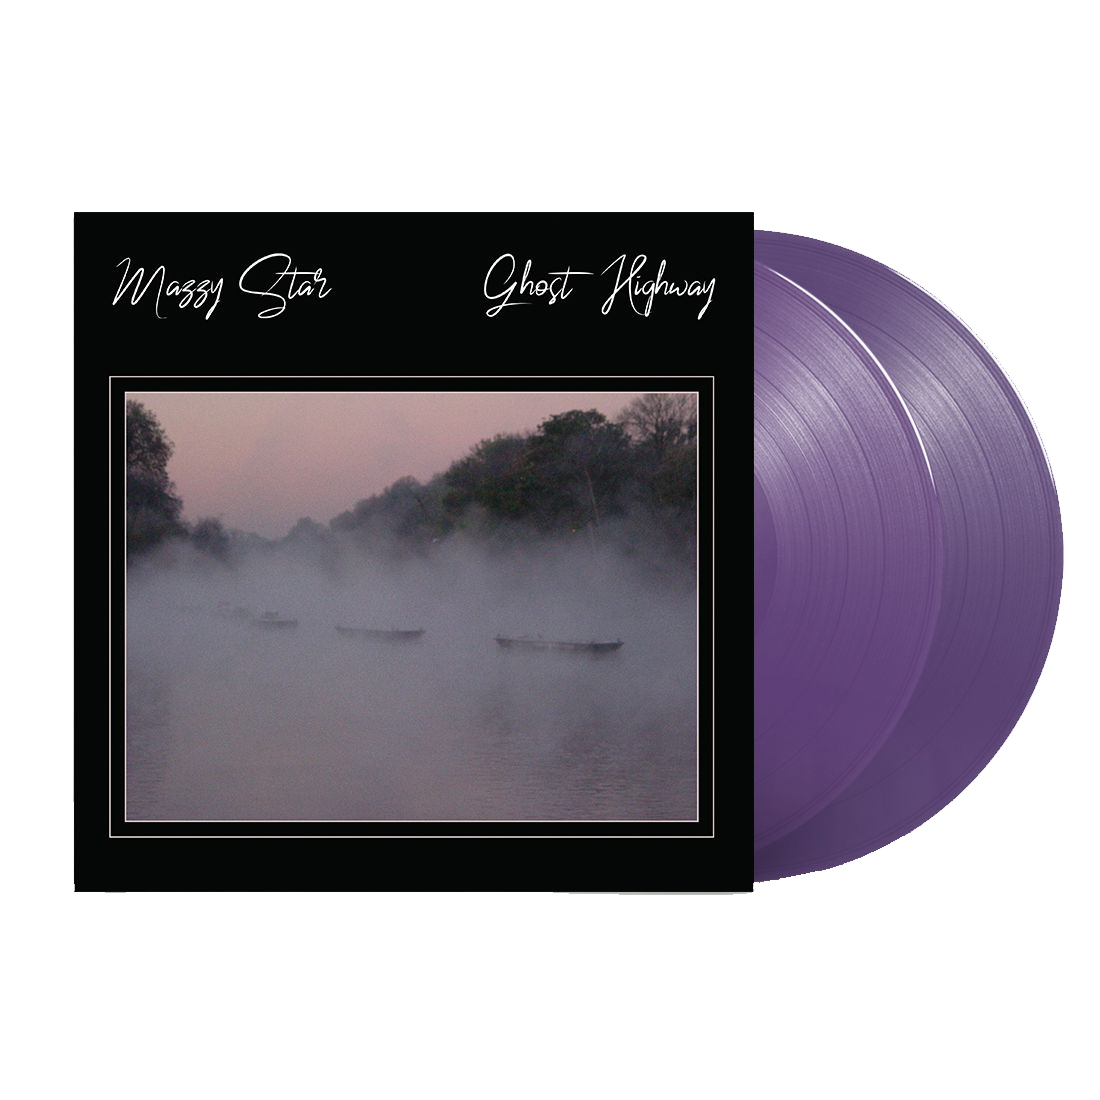 Ghost Highway: Limited Deluxe Purple Vinyl 2LP & 100 Copies Exclusive Art Print